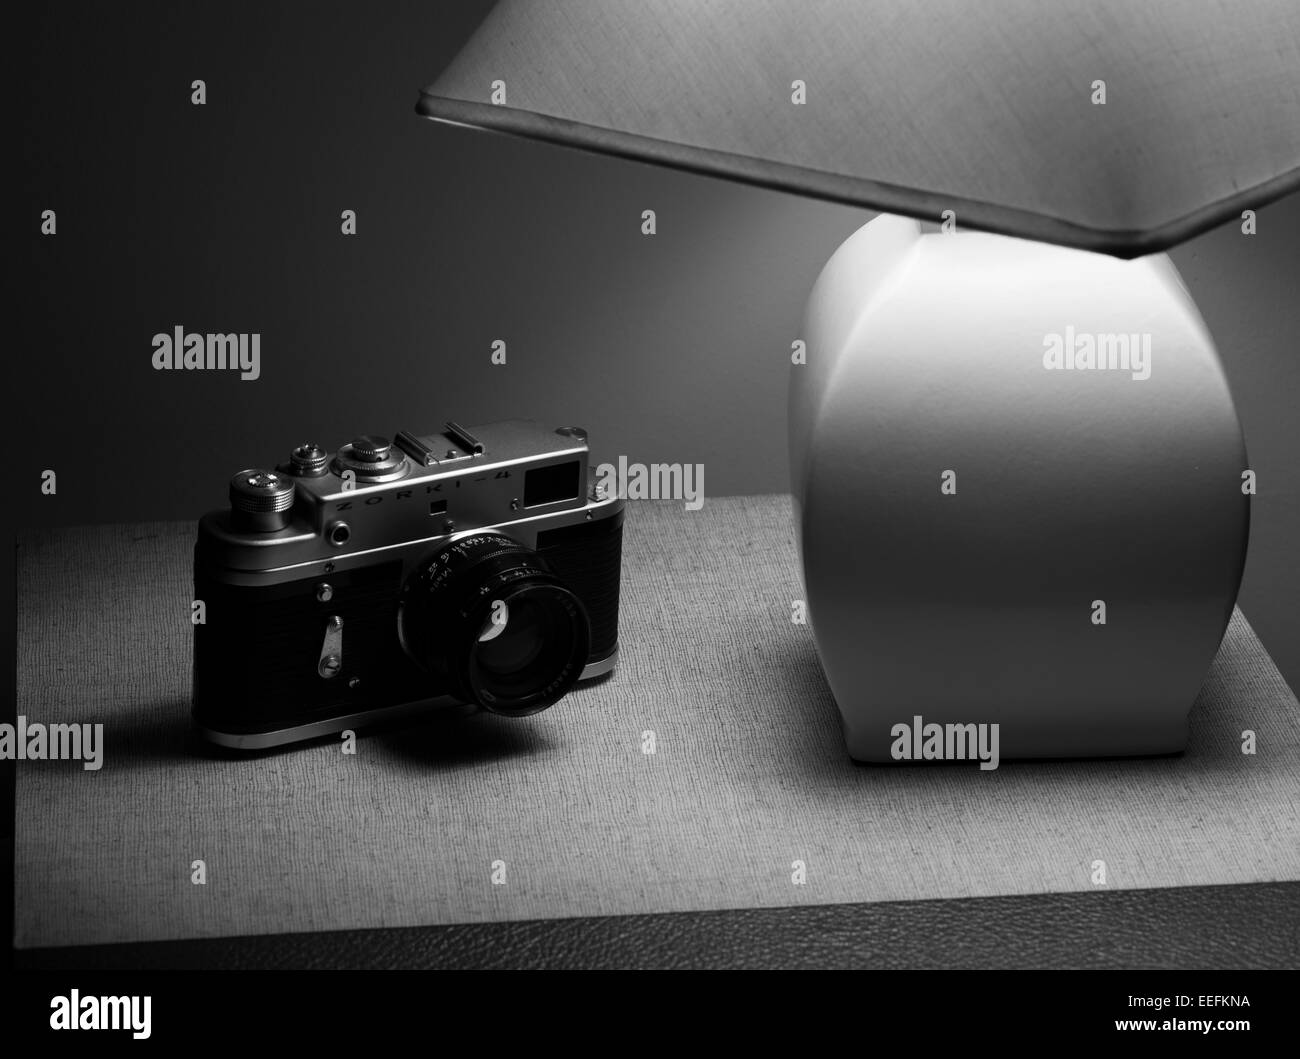 Zorki - 4 35mm Rangefinder fotocamera con un look rétro Foto Stock